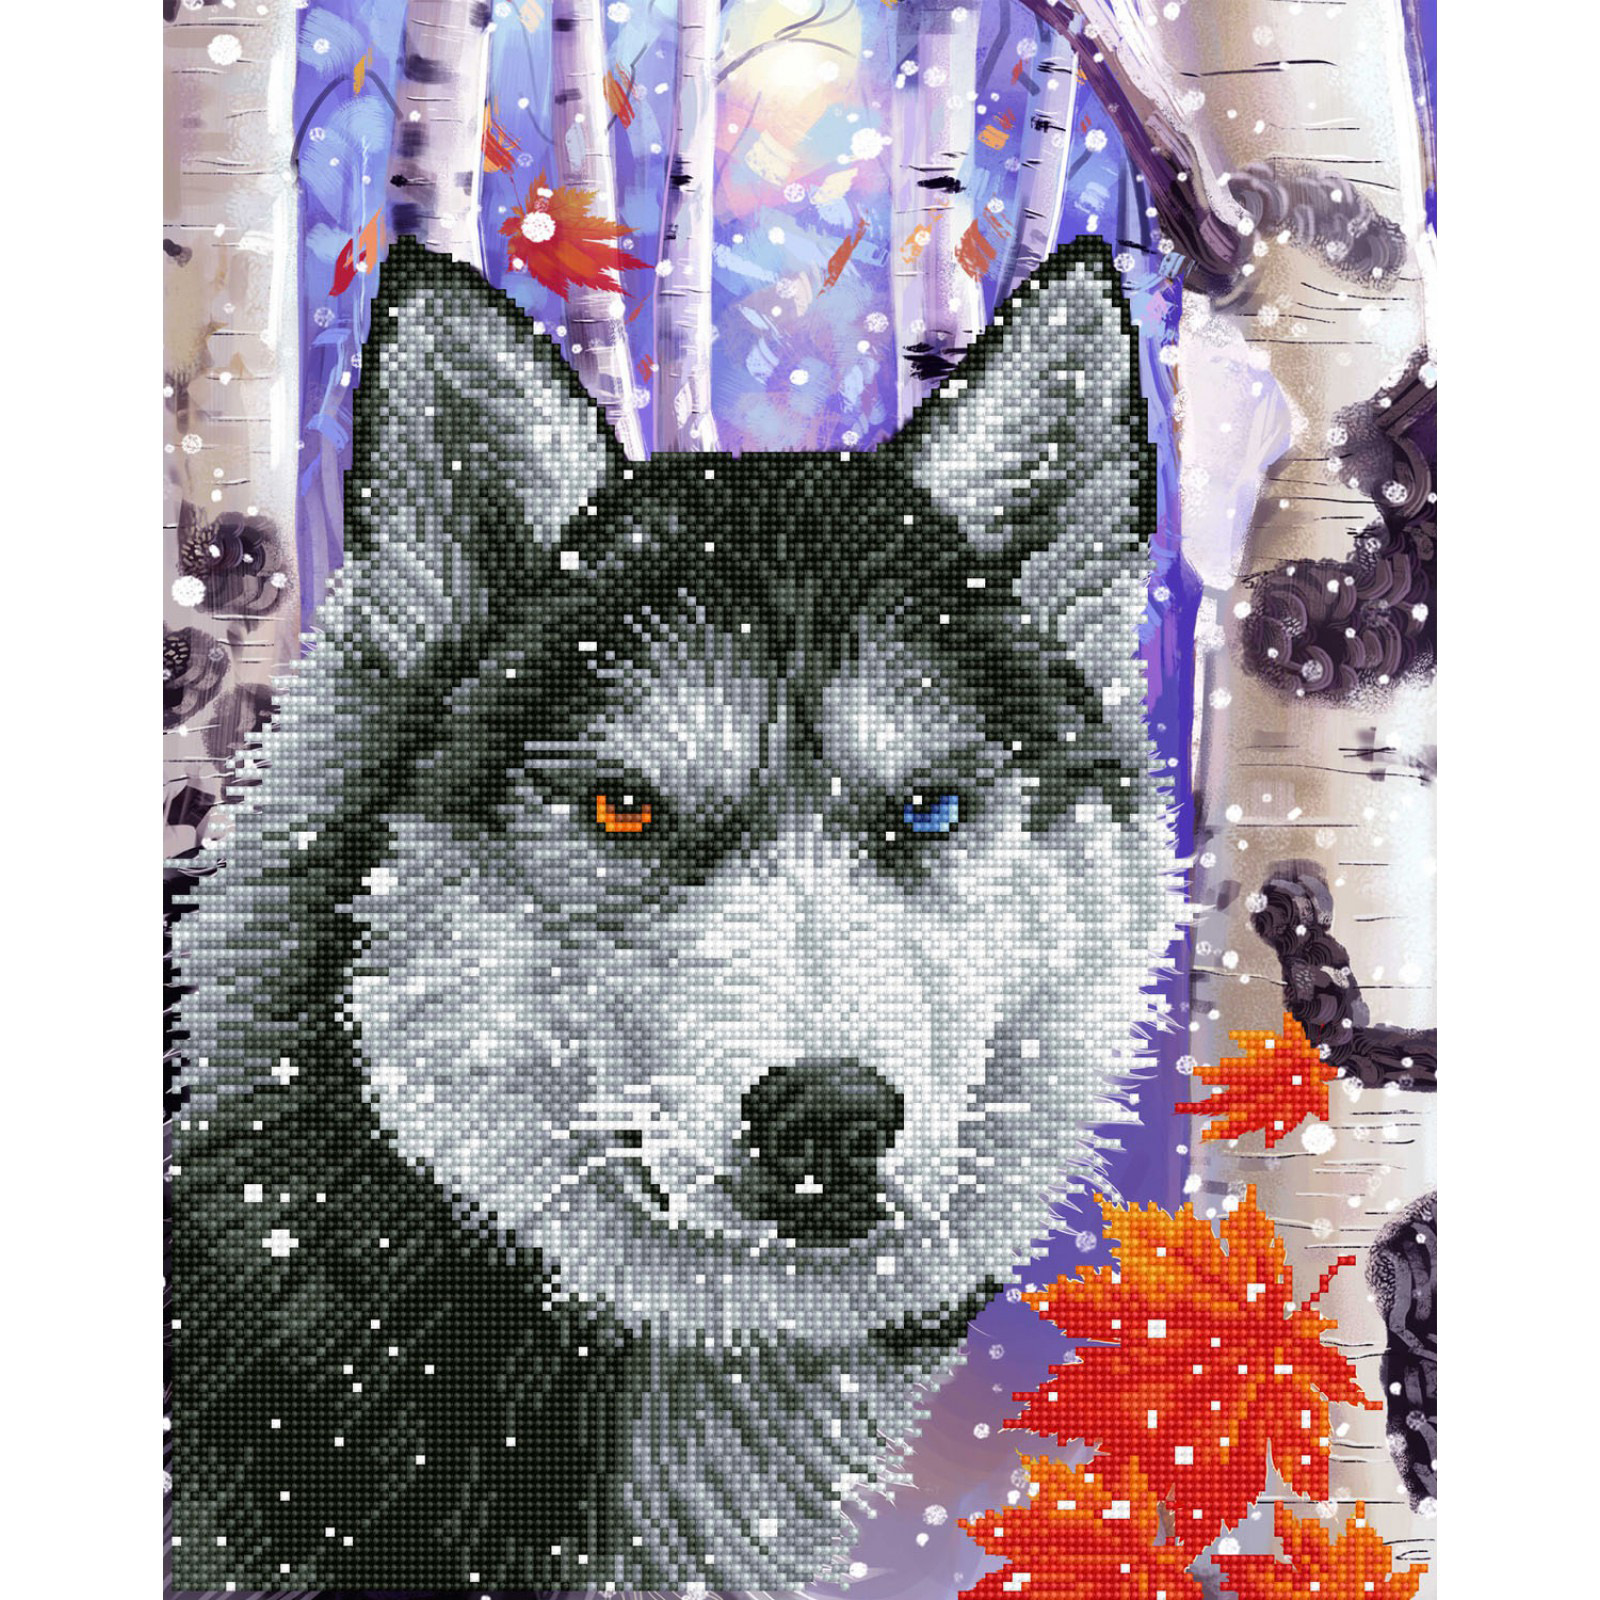 Diamond Dotz Facet Art Kit - Forest Wolf